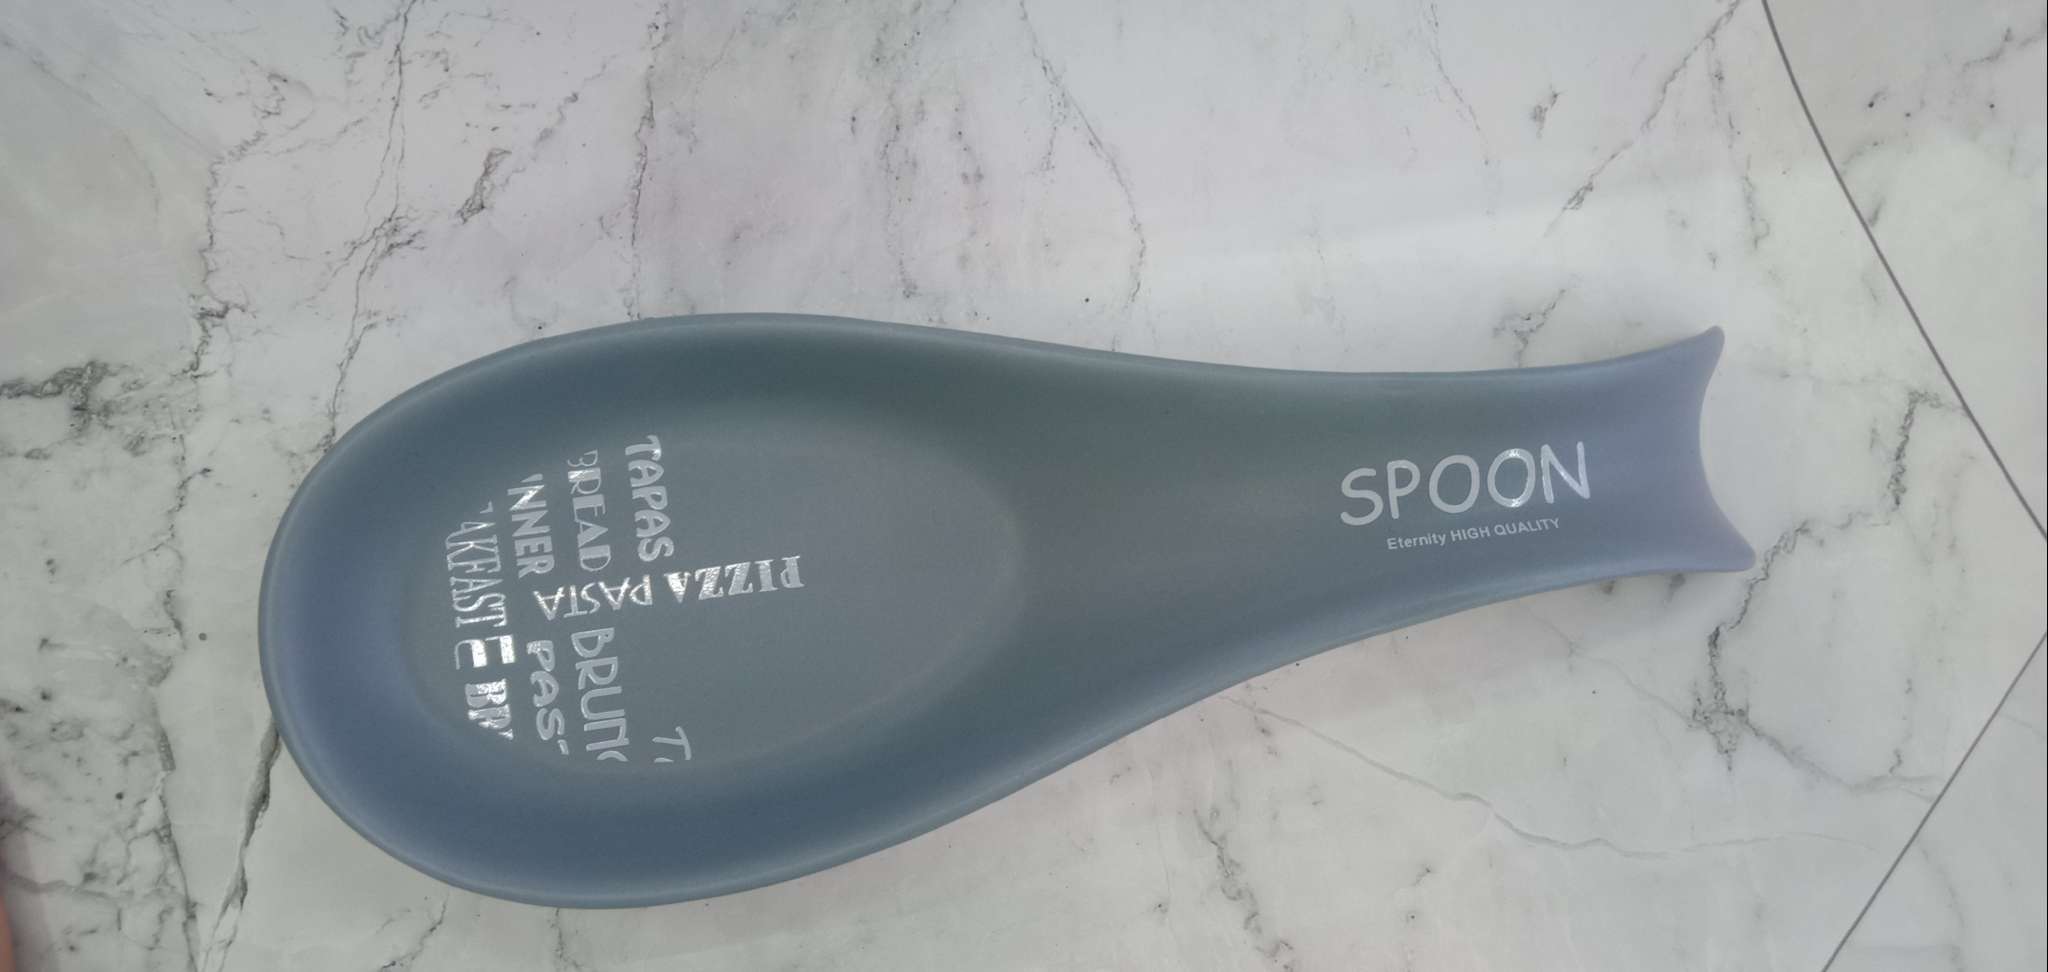 Spoon holder 简约蓝灰色刀叉陶瓷勺垫 厨具锅铲垫图